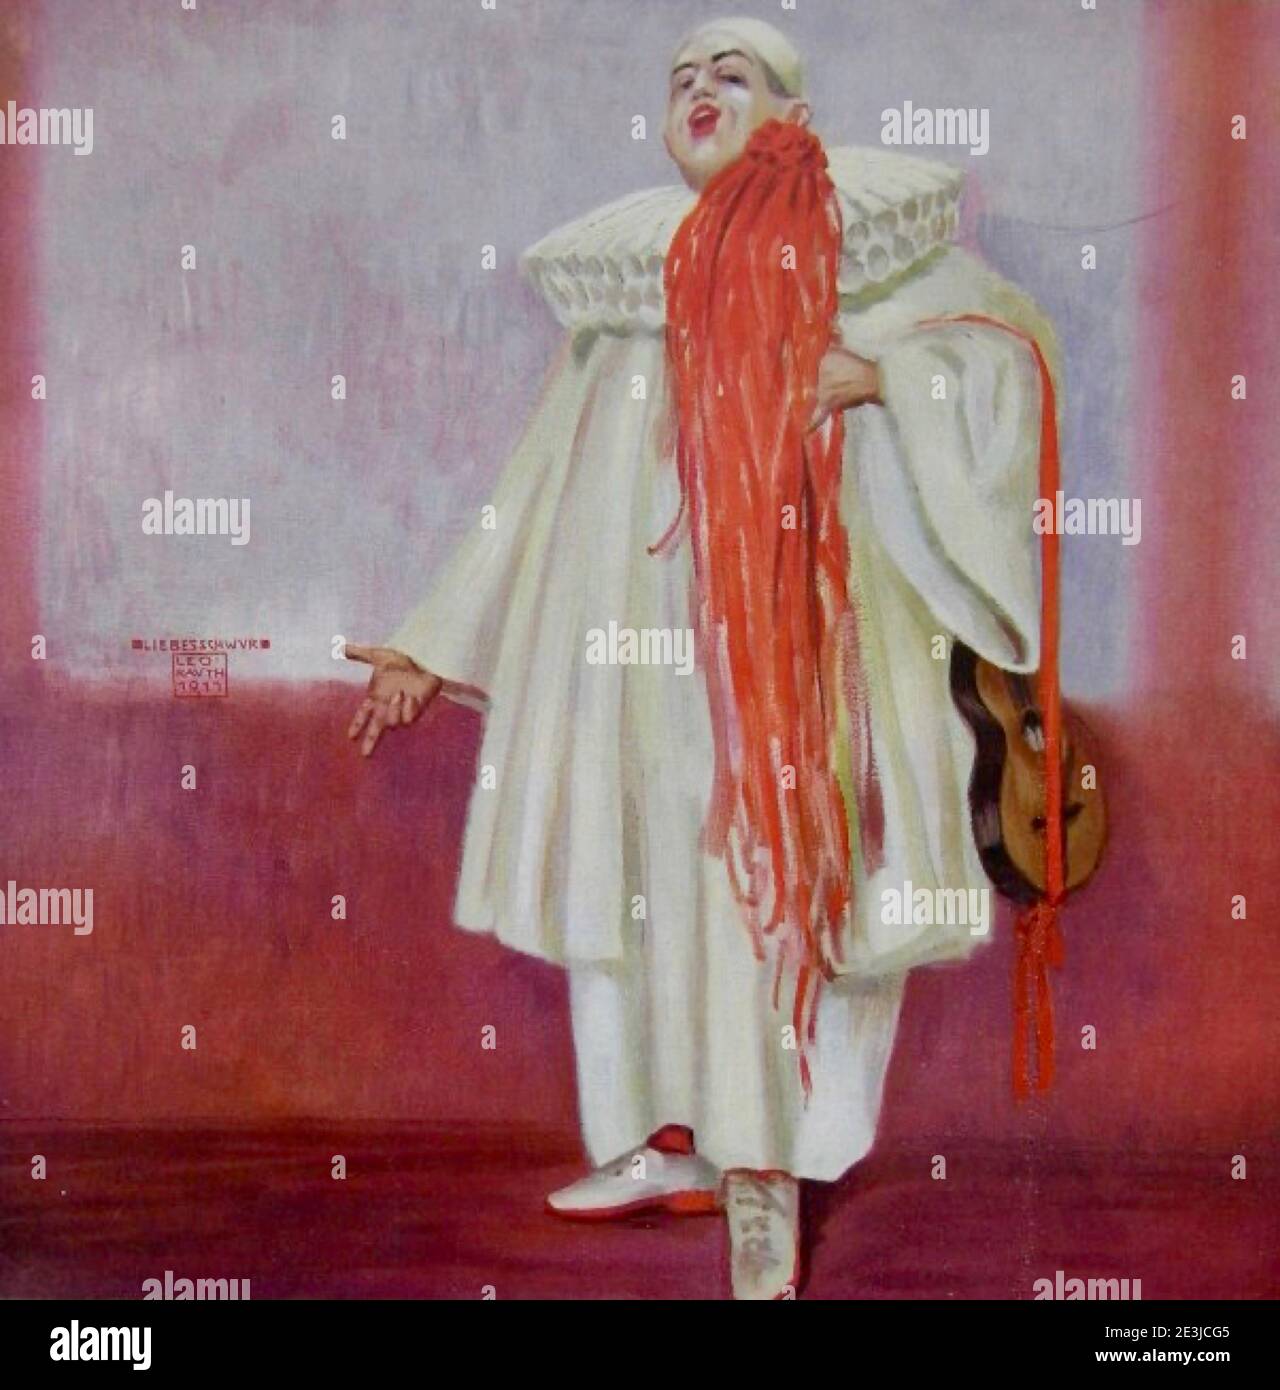 Oeuvre de Leo Rauth appelée Liebesschwur. Un clown en costume blanc et rouge promet son amour. Copiez l'espace pour ajouter un message d'amour. Banque D'Images